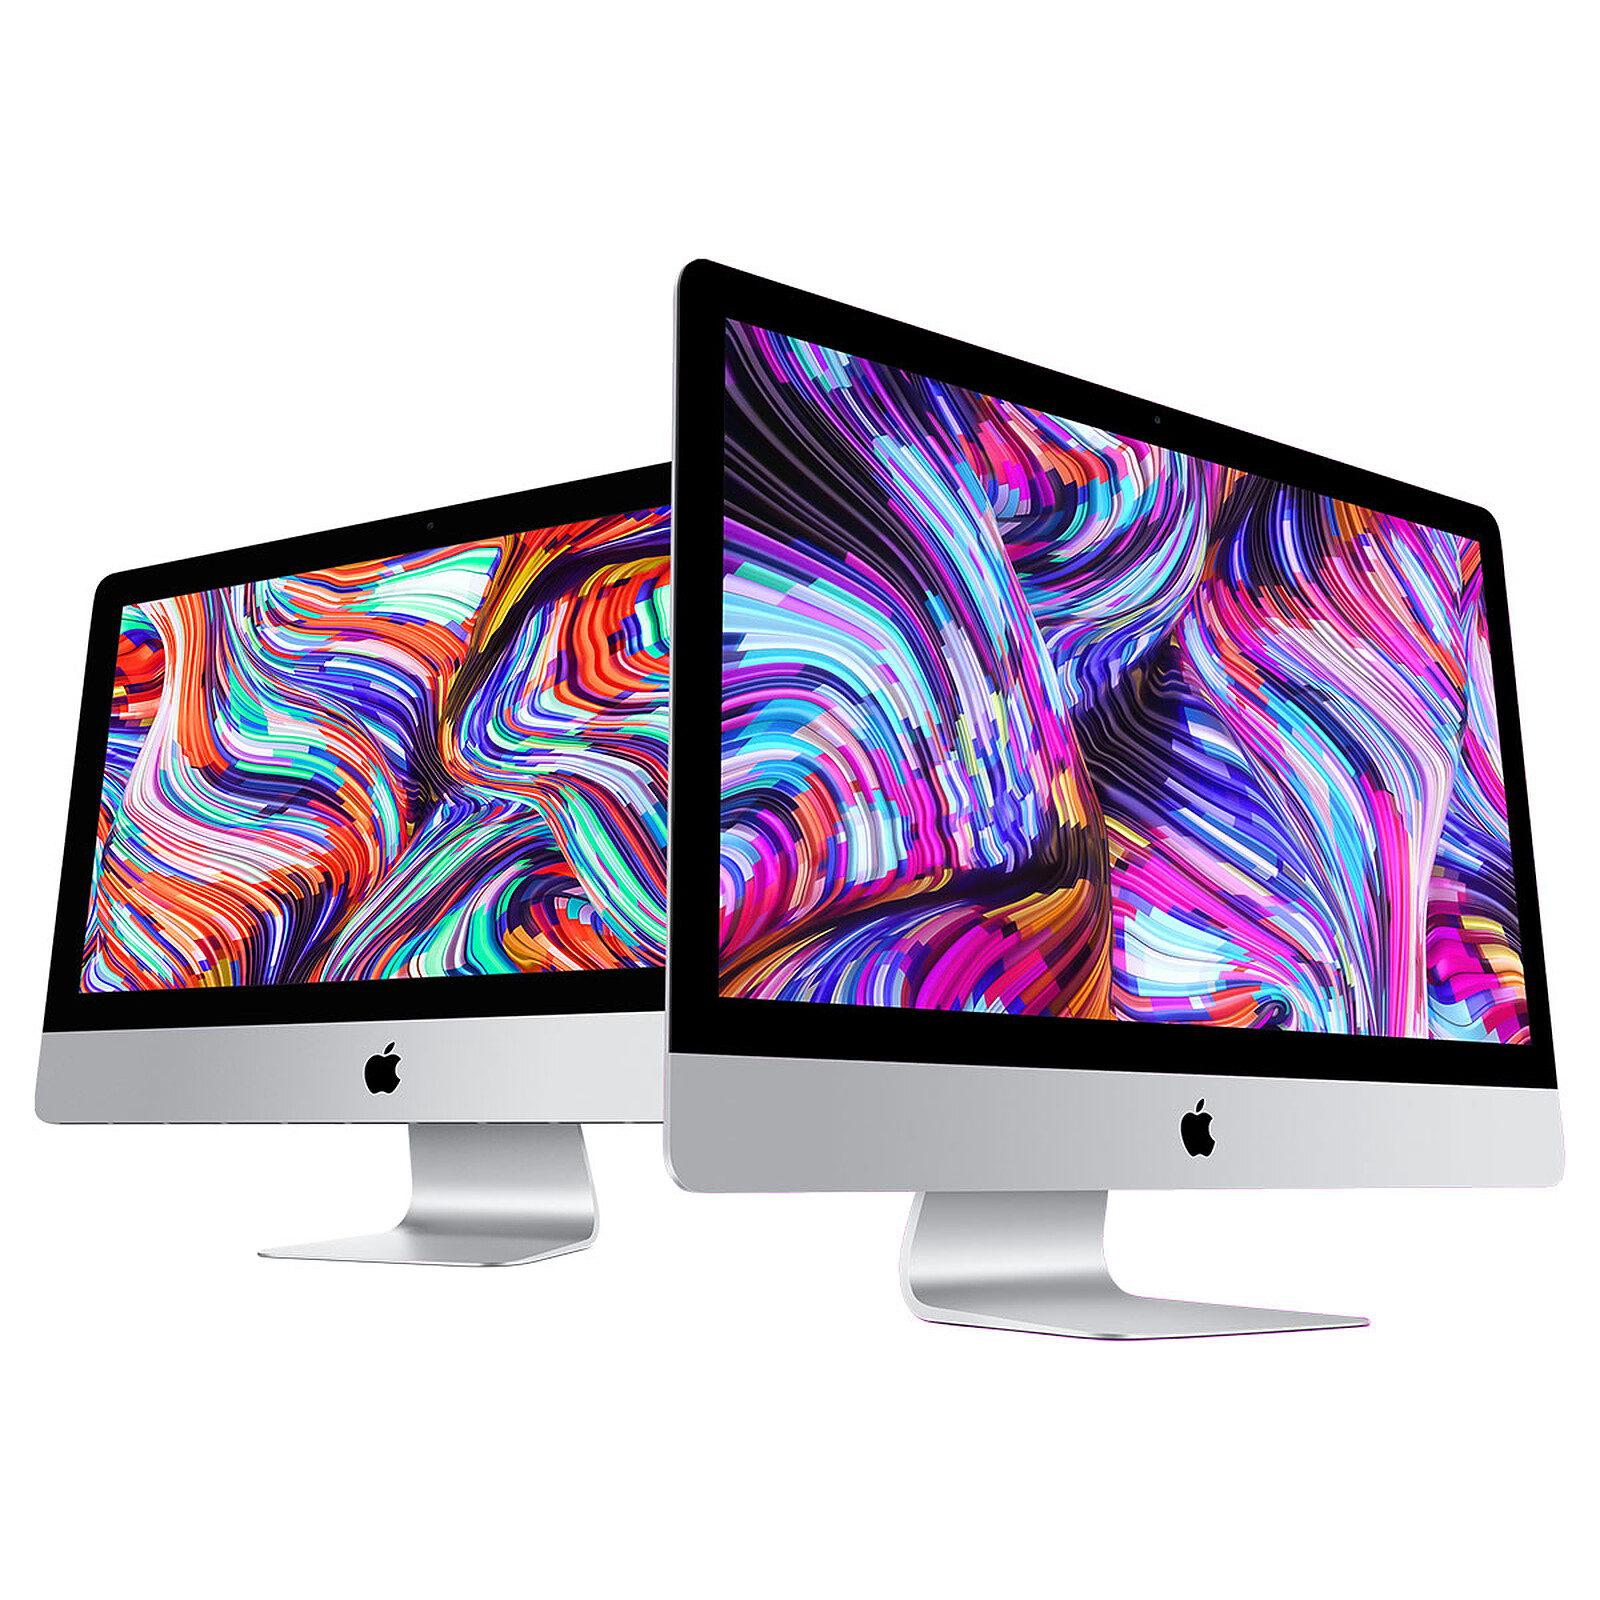 iMac 21,5 Retina 4K 2019 - Intel i3 3,6 GHz - 8 Go RAM Reconditionné